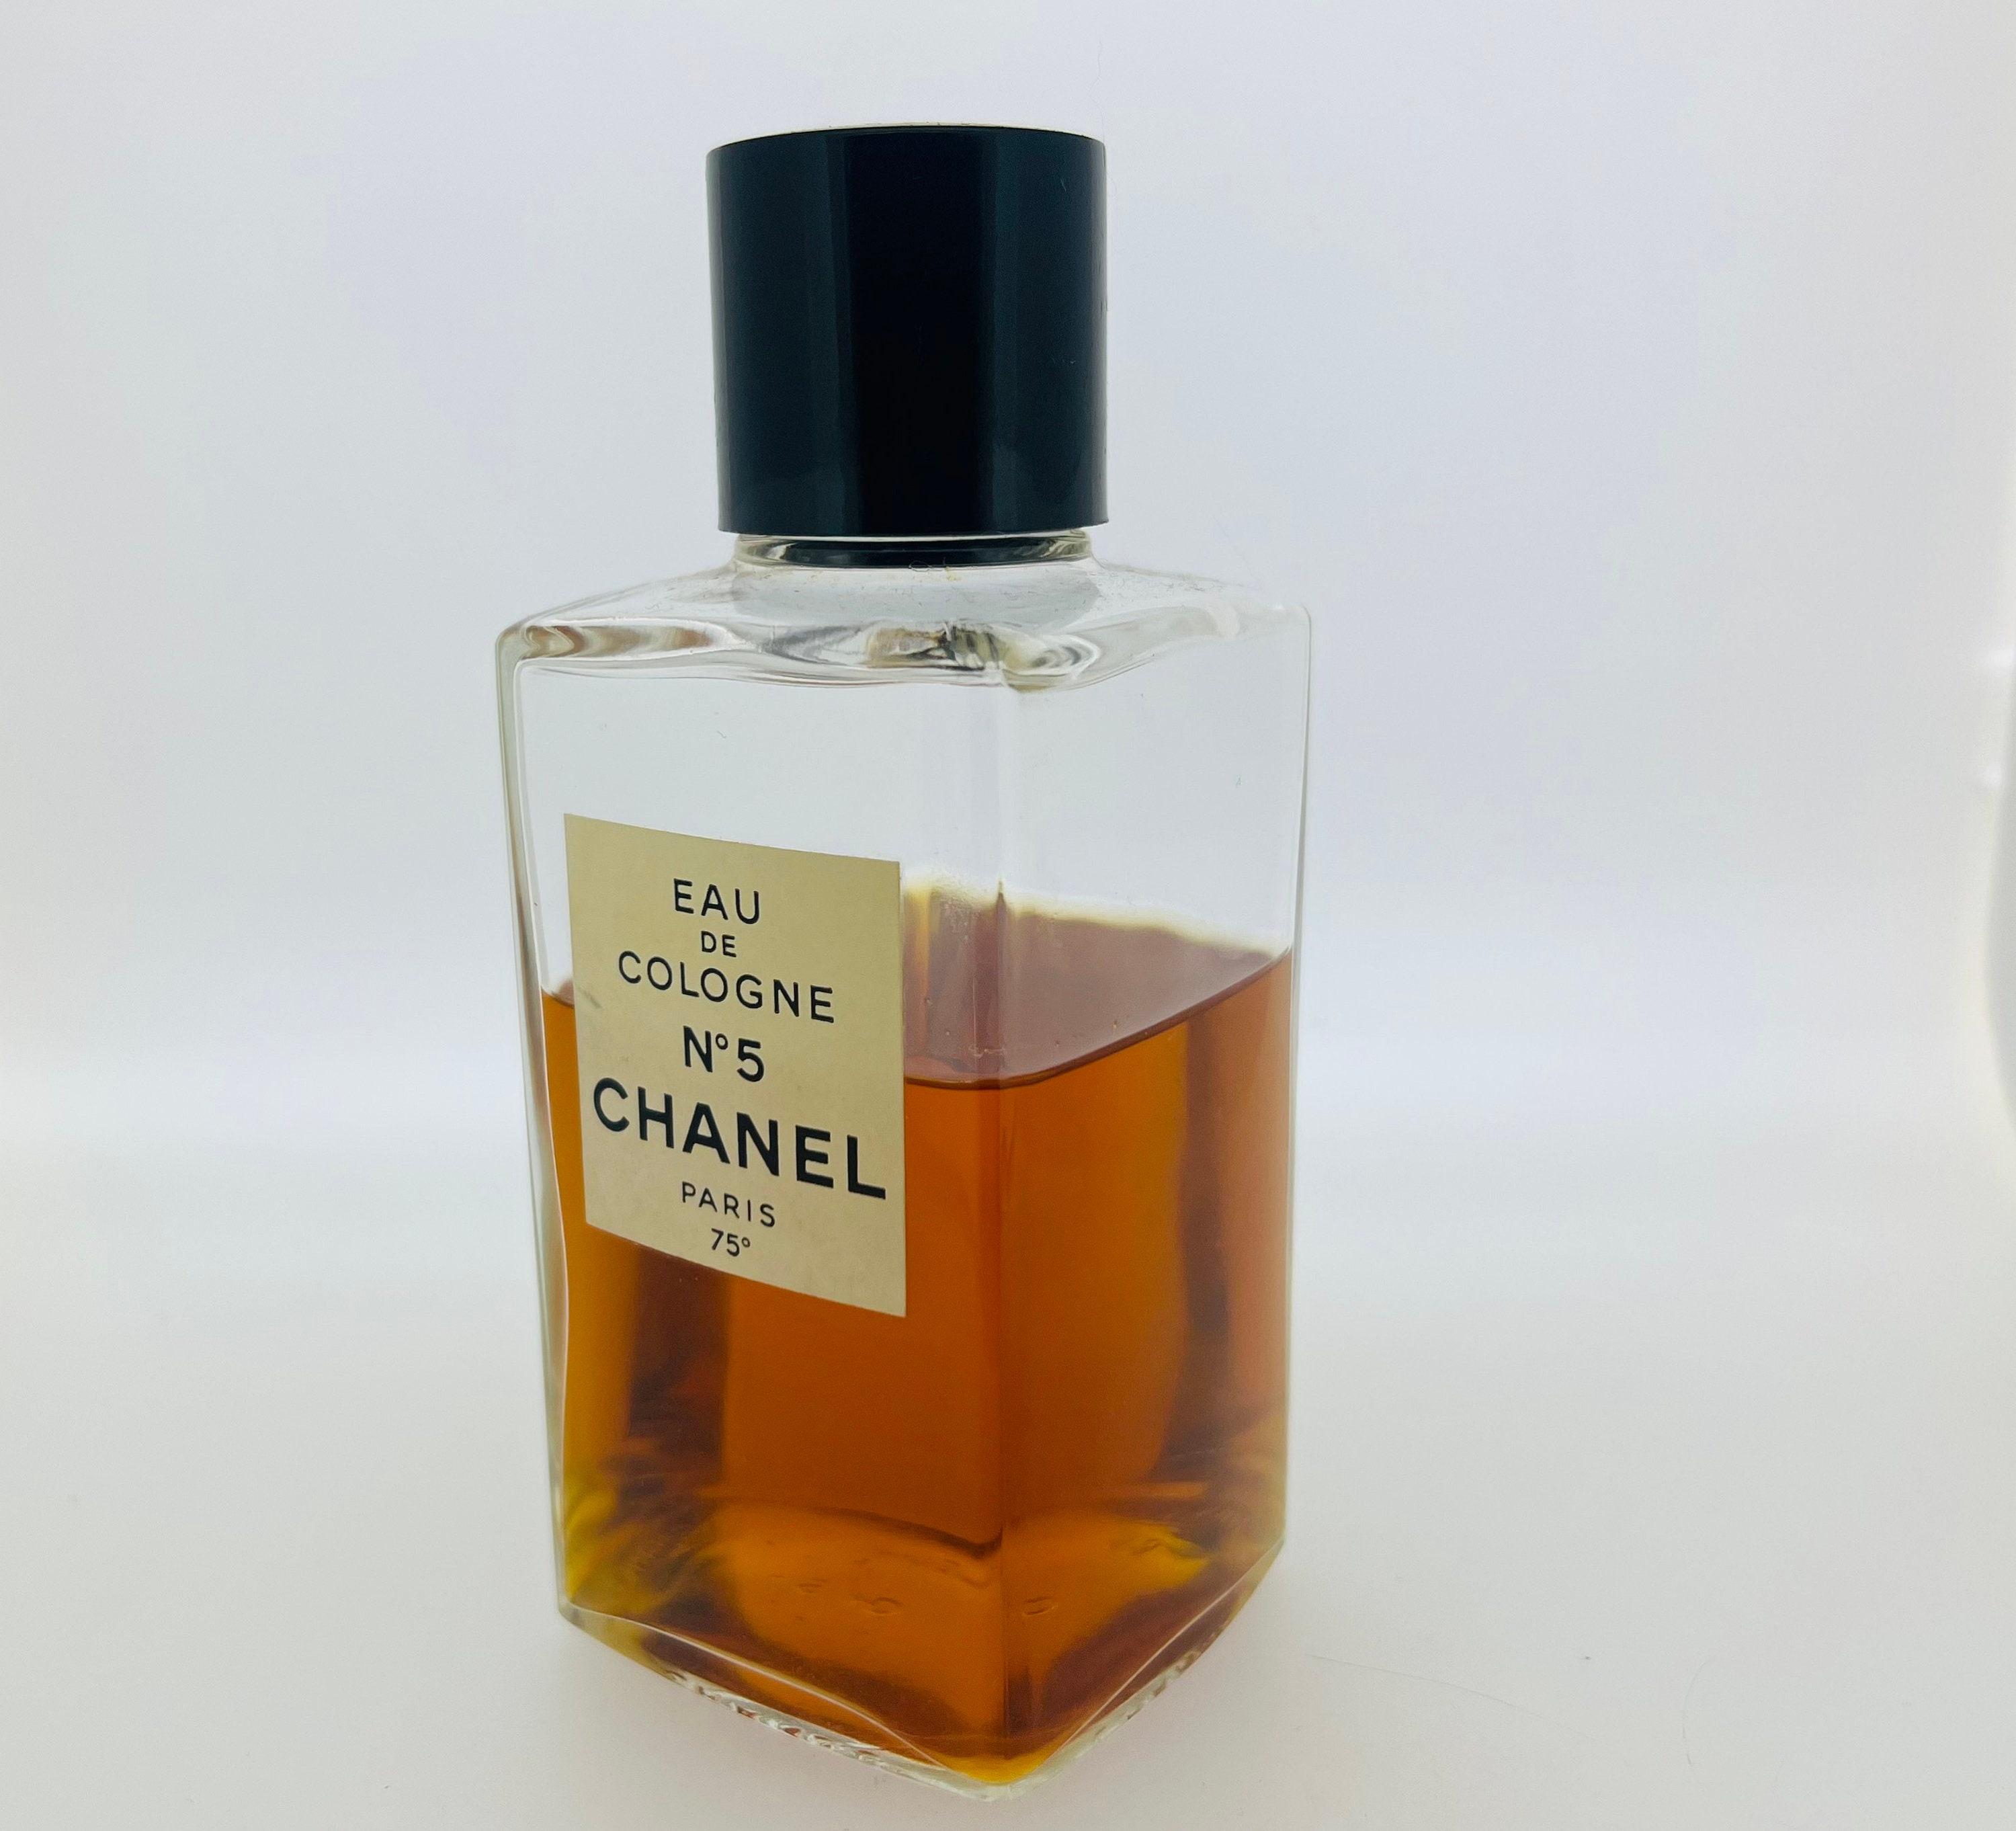 Free: RARE Vintage 1960s CHANEL No. 5 Eau de Toilette Paris Glass Perfume  Bottle Full..Original Box. - Fragrances -  Auctions for Free Stuff